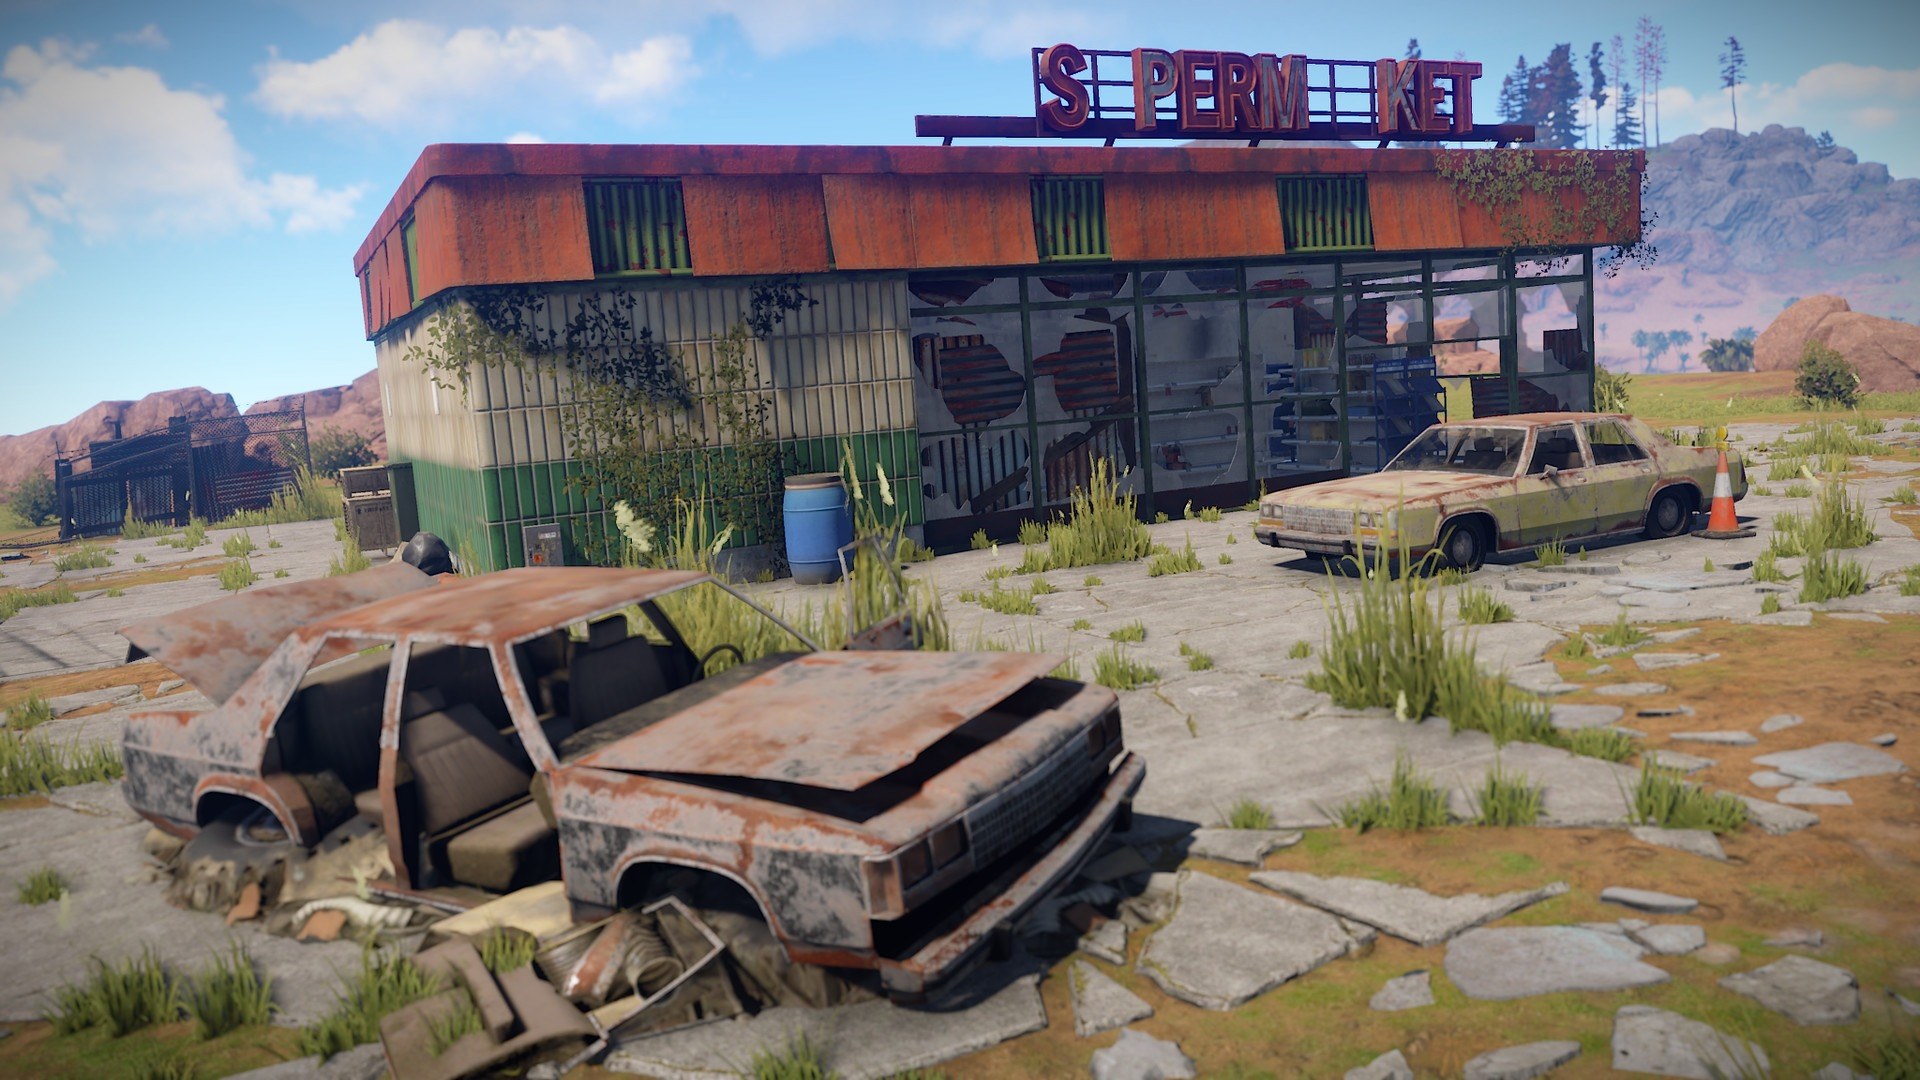 Скриншоты Раст, 12 картинок из онлайн игры Rust, новые снимки и изображения...